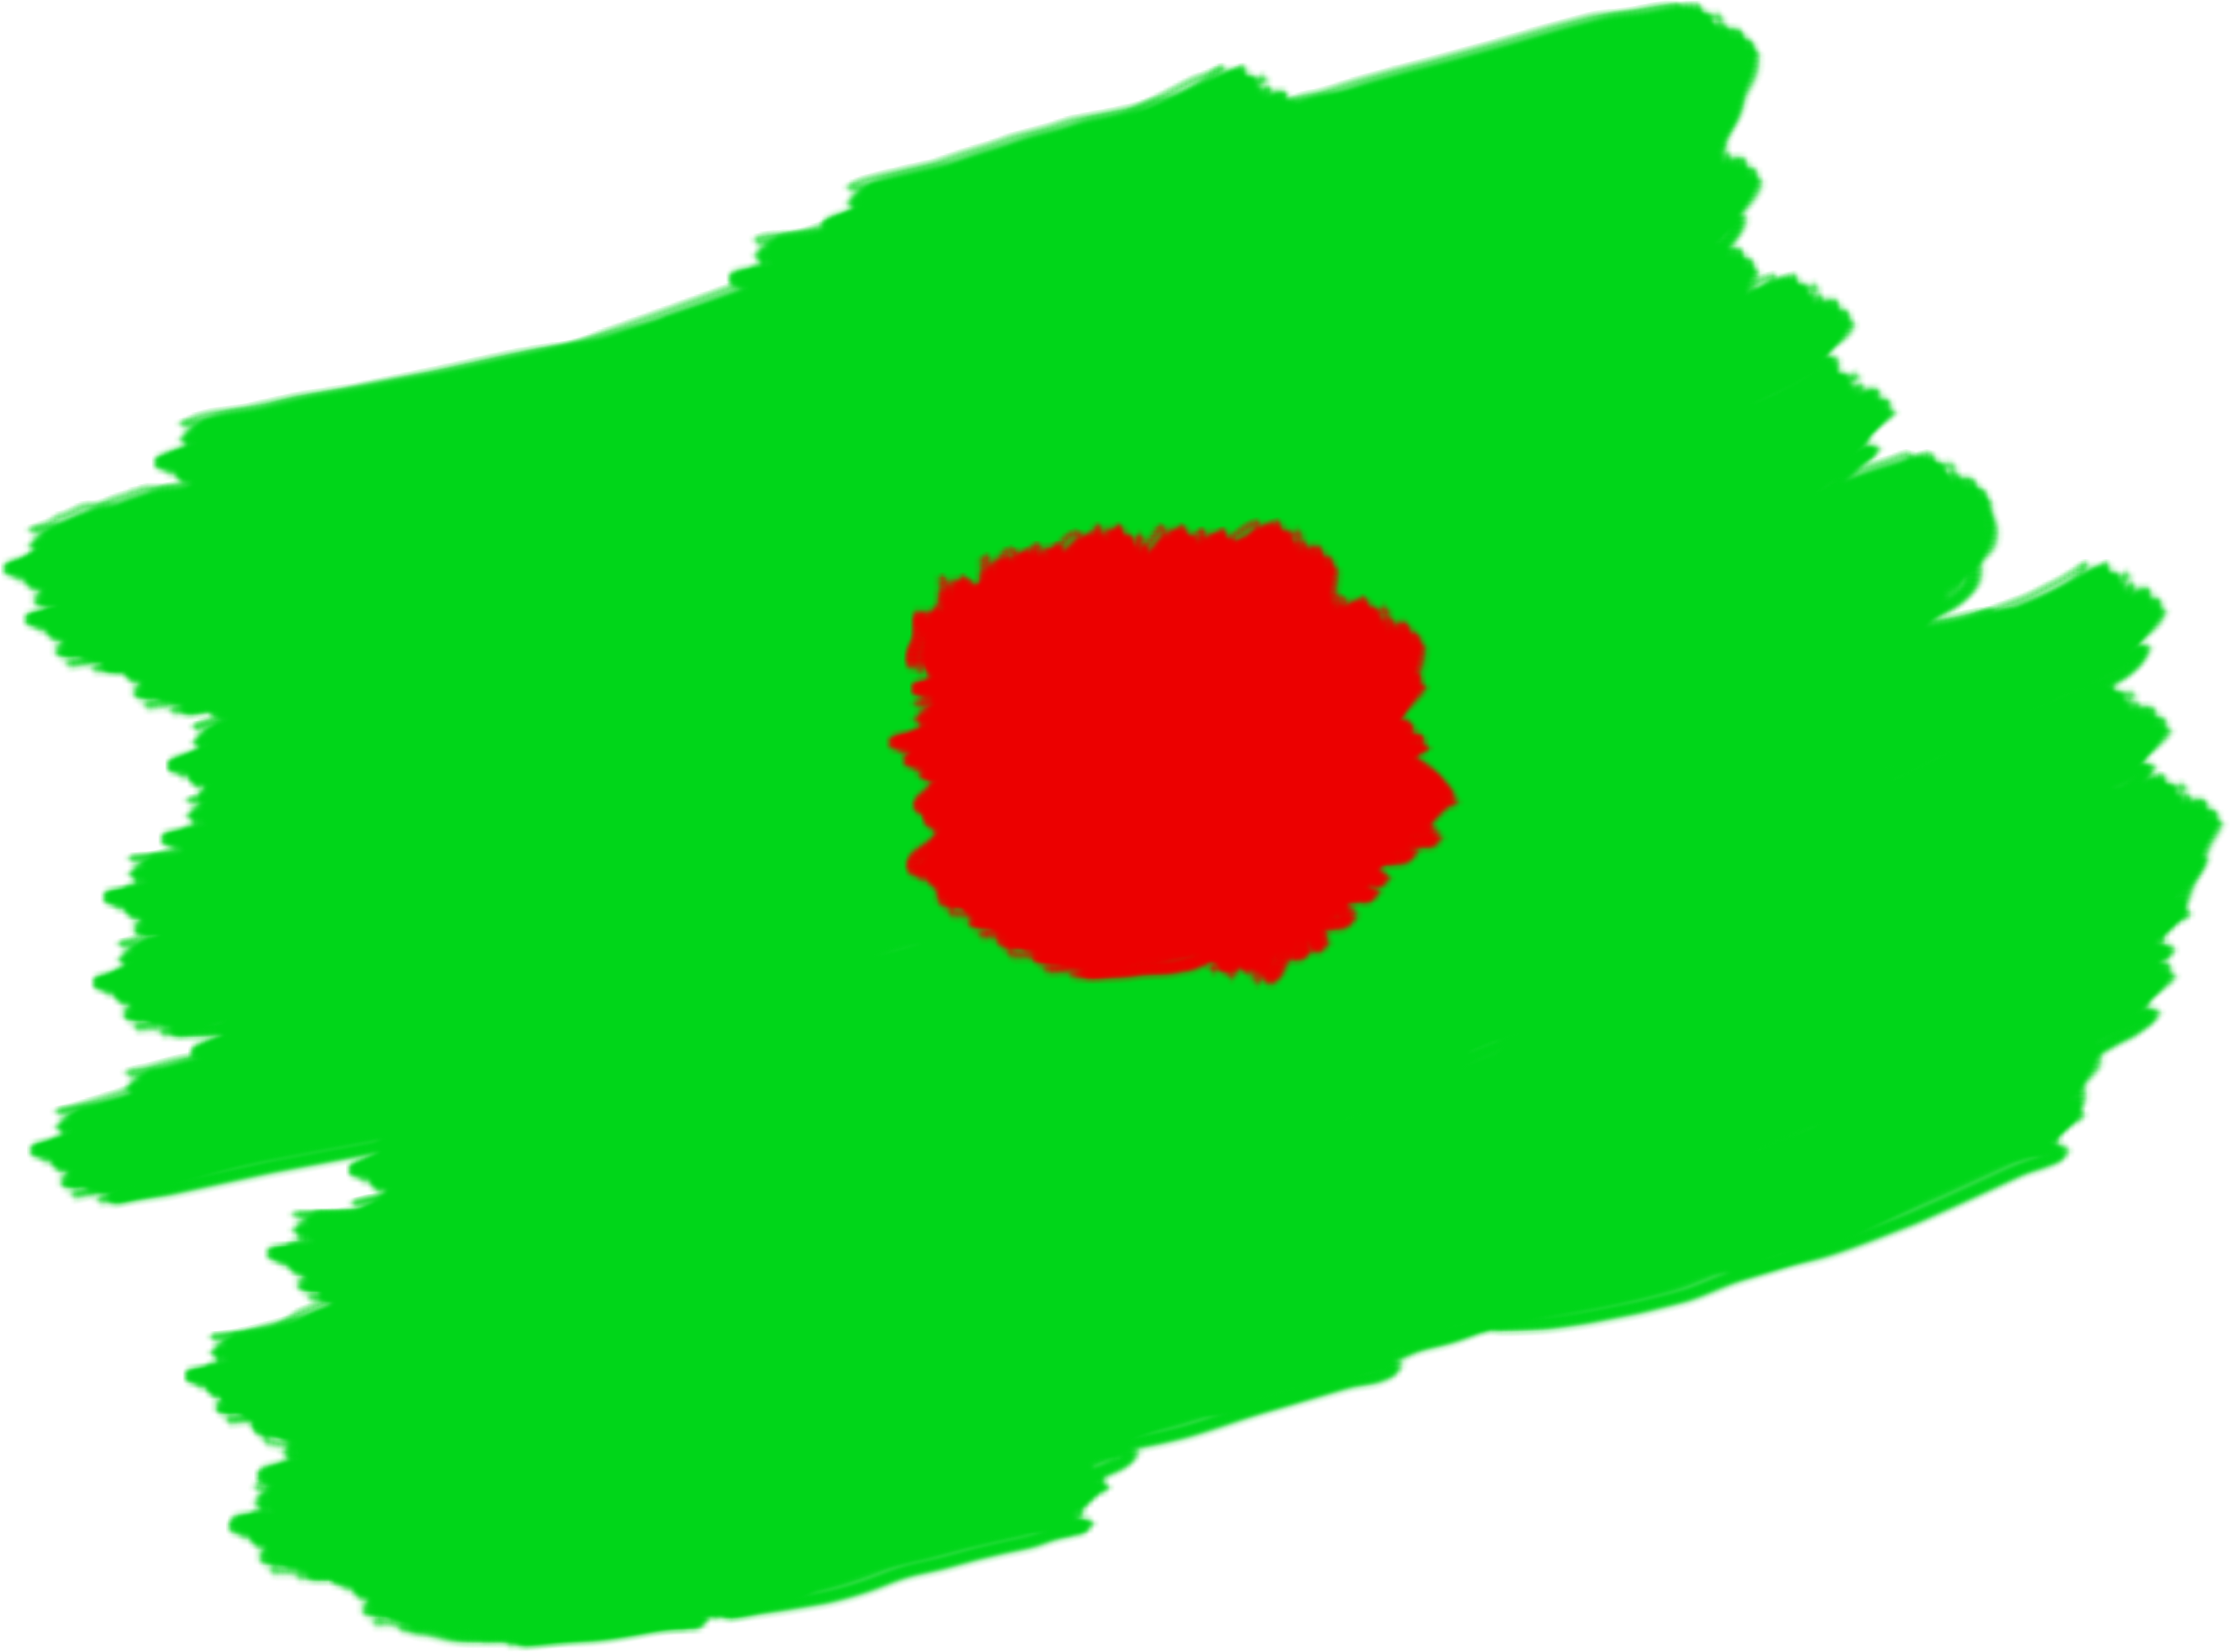 Bangladesh Flag Transparent Images